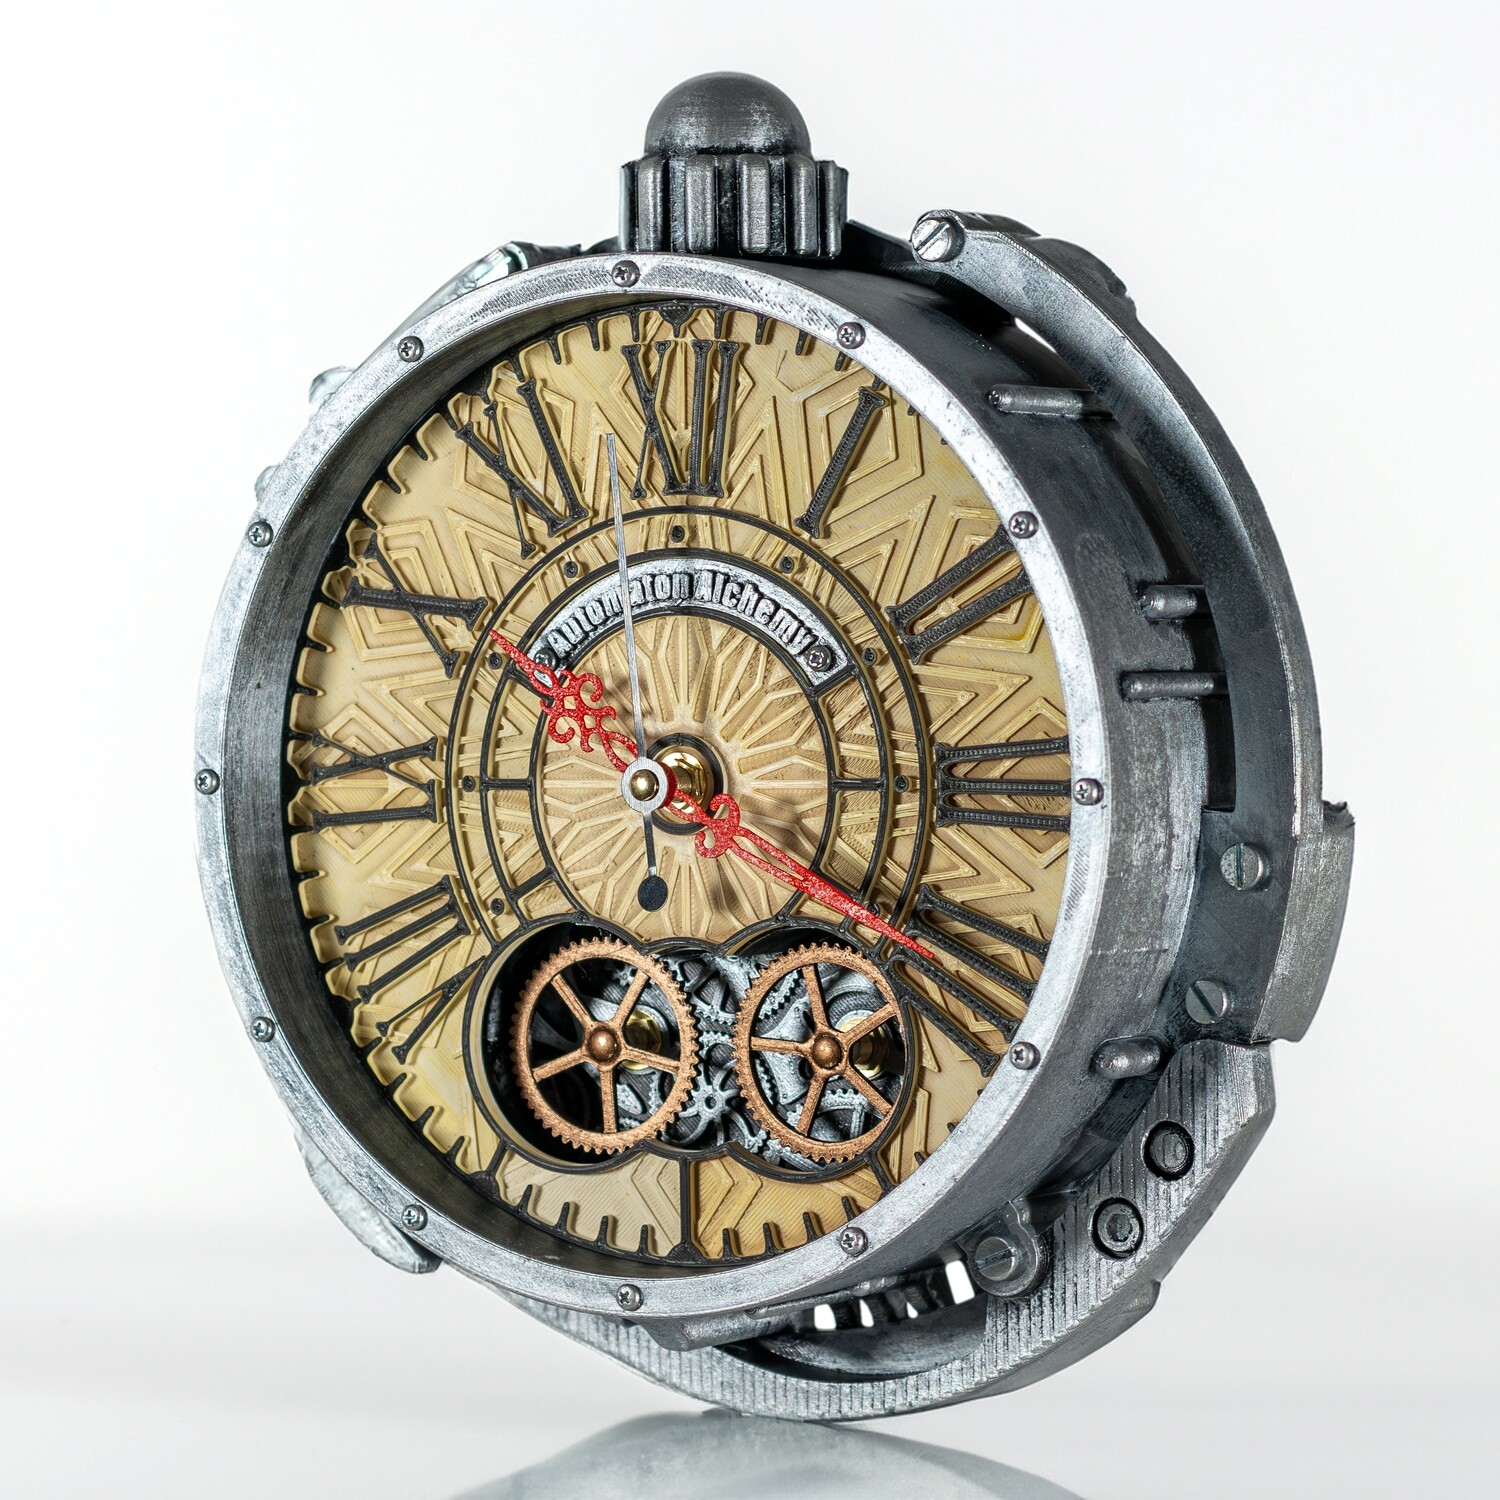 Настенные часы в винтажном стиле с бесшумным механизмом. Оригинальные дизайнерские часы для стильного интерьера.